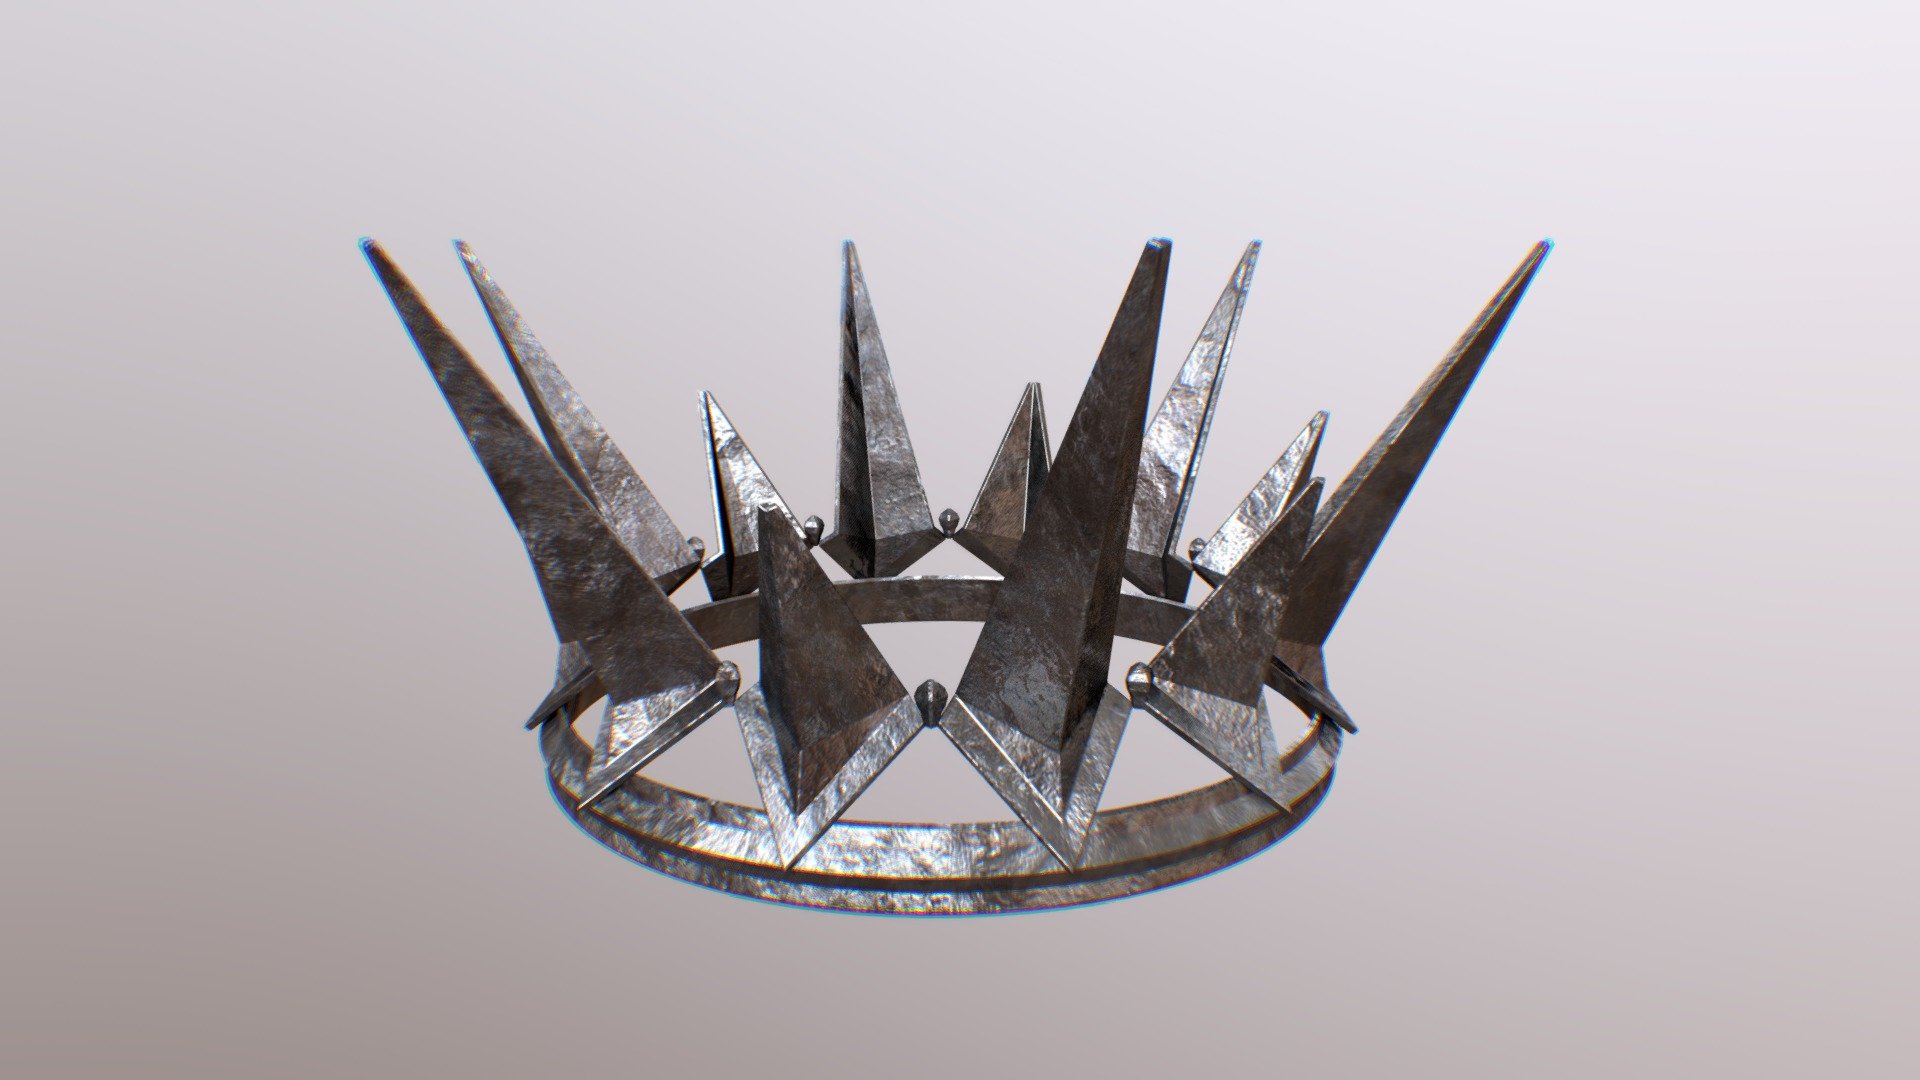 evil queen crown png